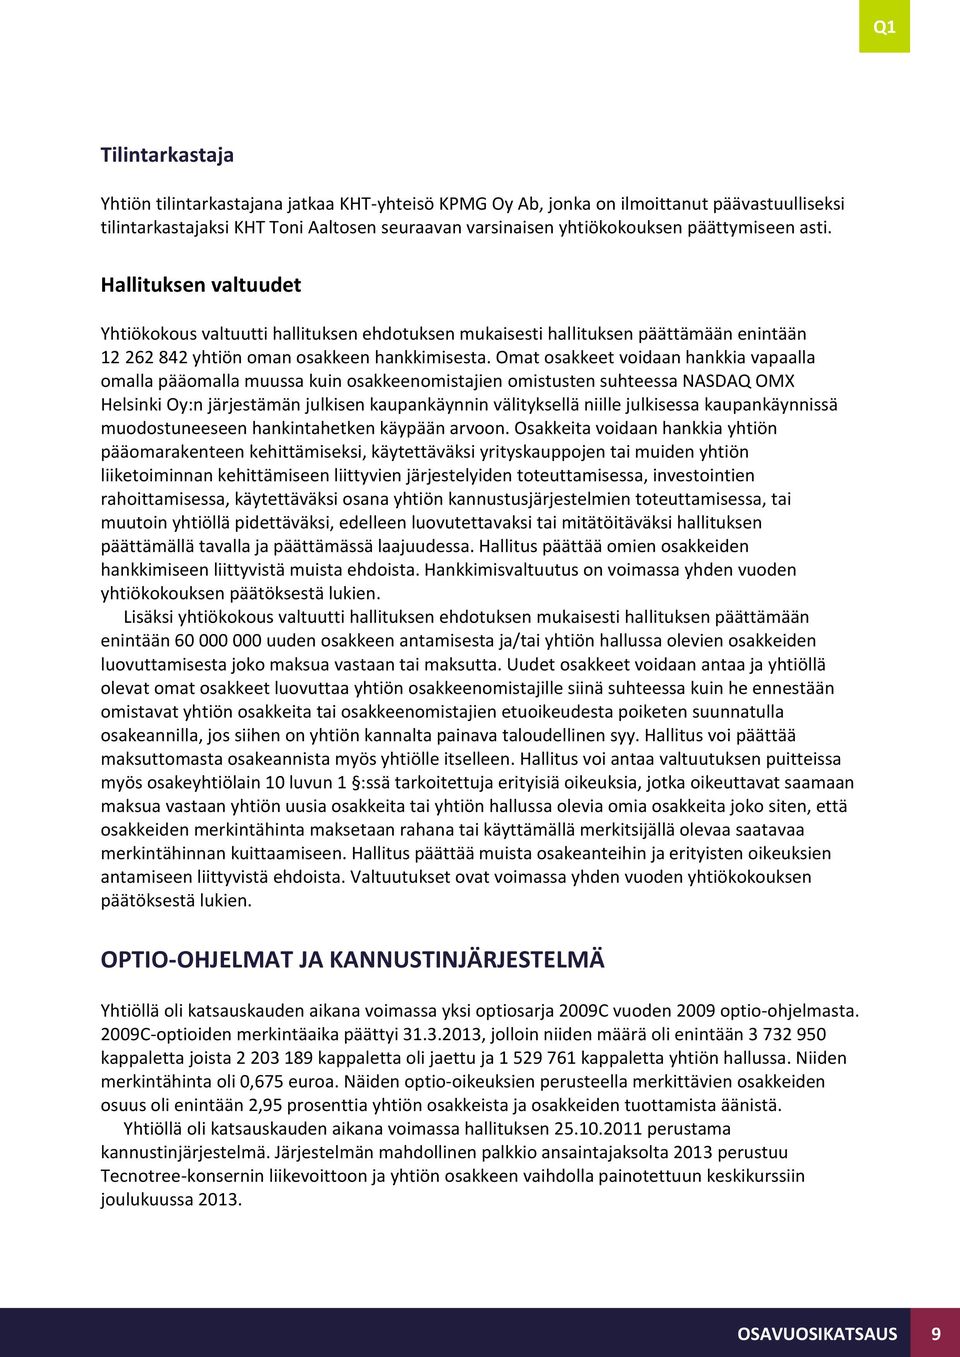 Omat osakkeet voidaan hankkia vapaalla omalla pääomalla muussa kuin osakkeenomistajien omistusten suhteessa NASDAQ OMX Helsinki Oy:n järjestämän julkisen kaupankäynnin välityksellä niille julkisessa